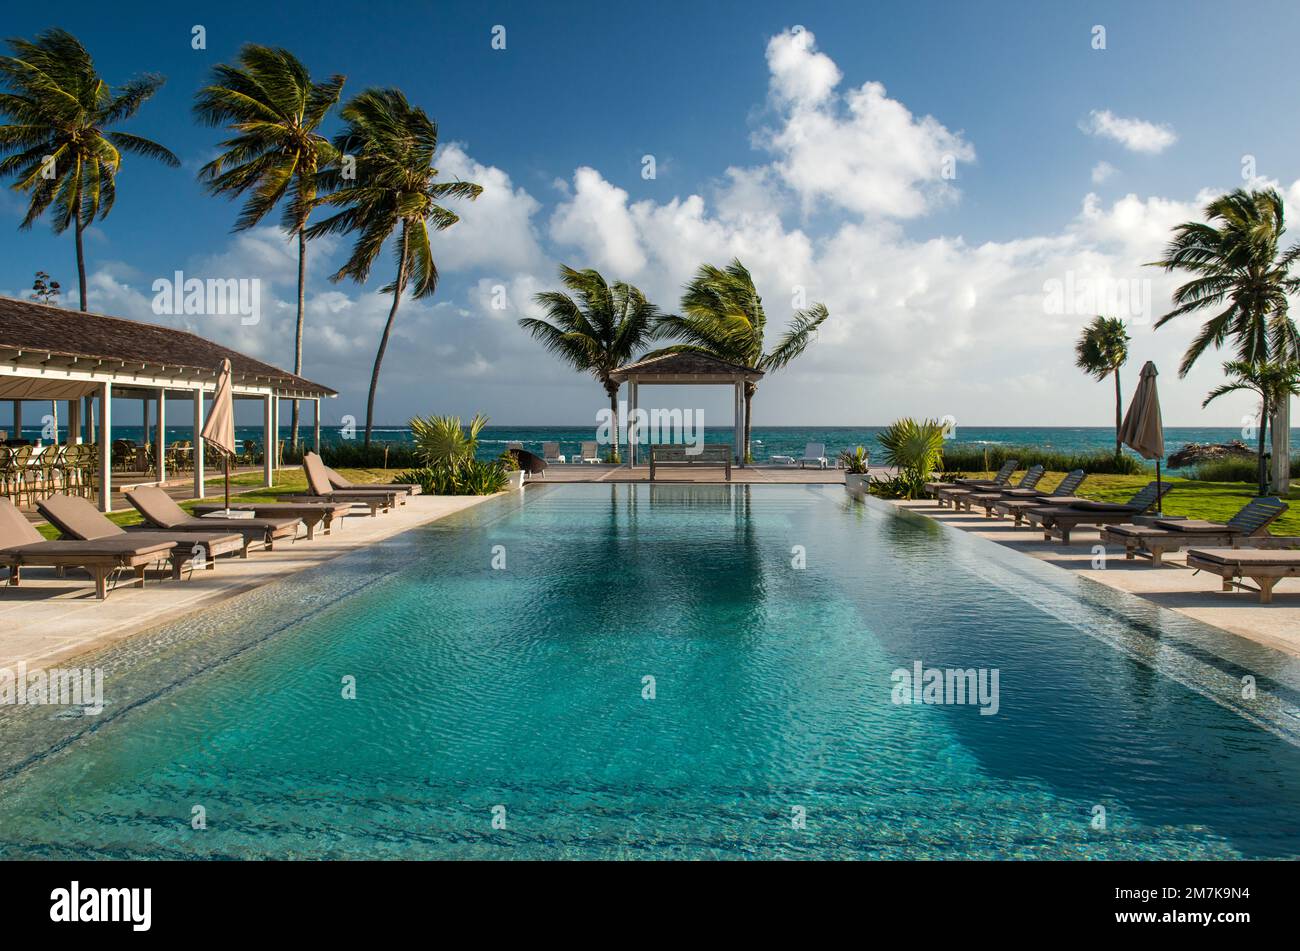 Hotel pool in Eleuthera, Bahamas Stock Photo